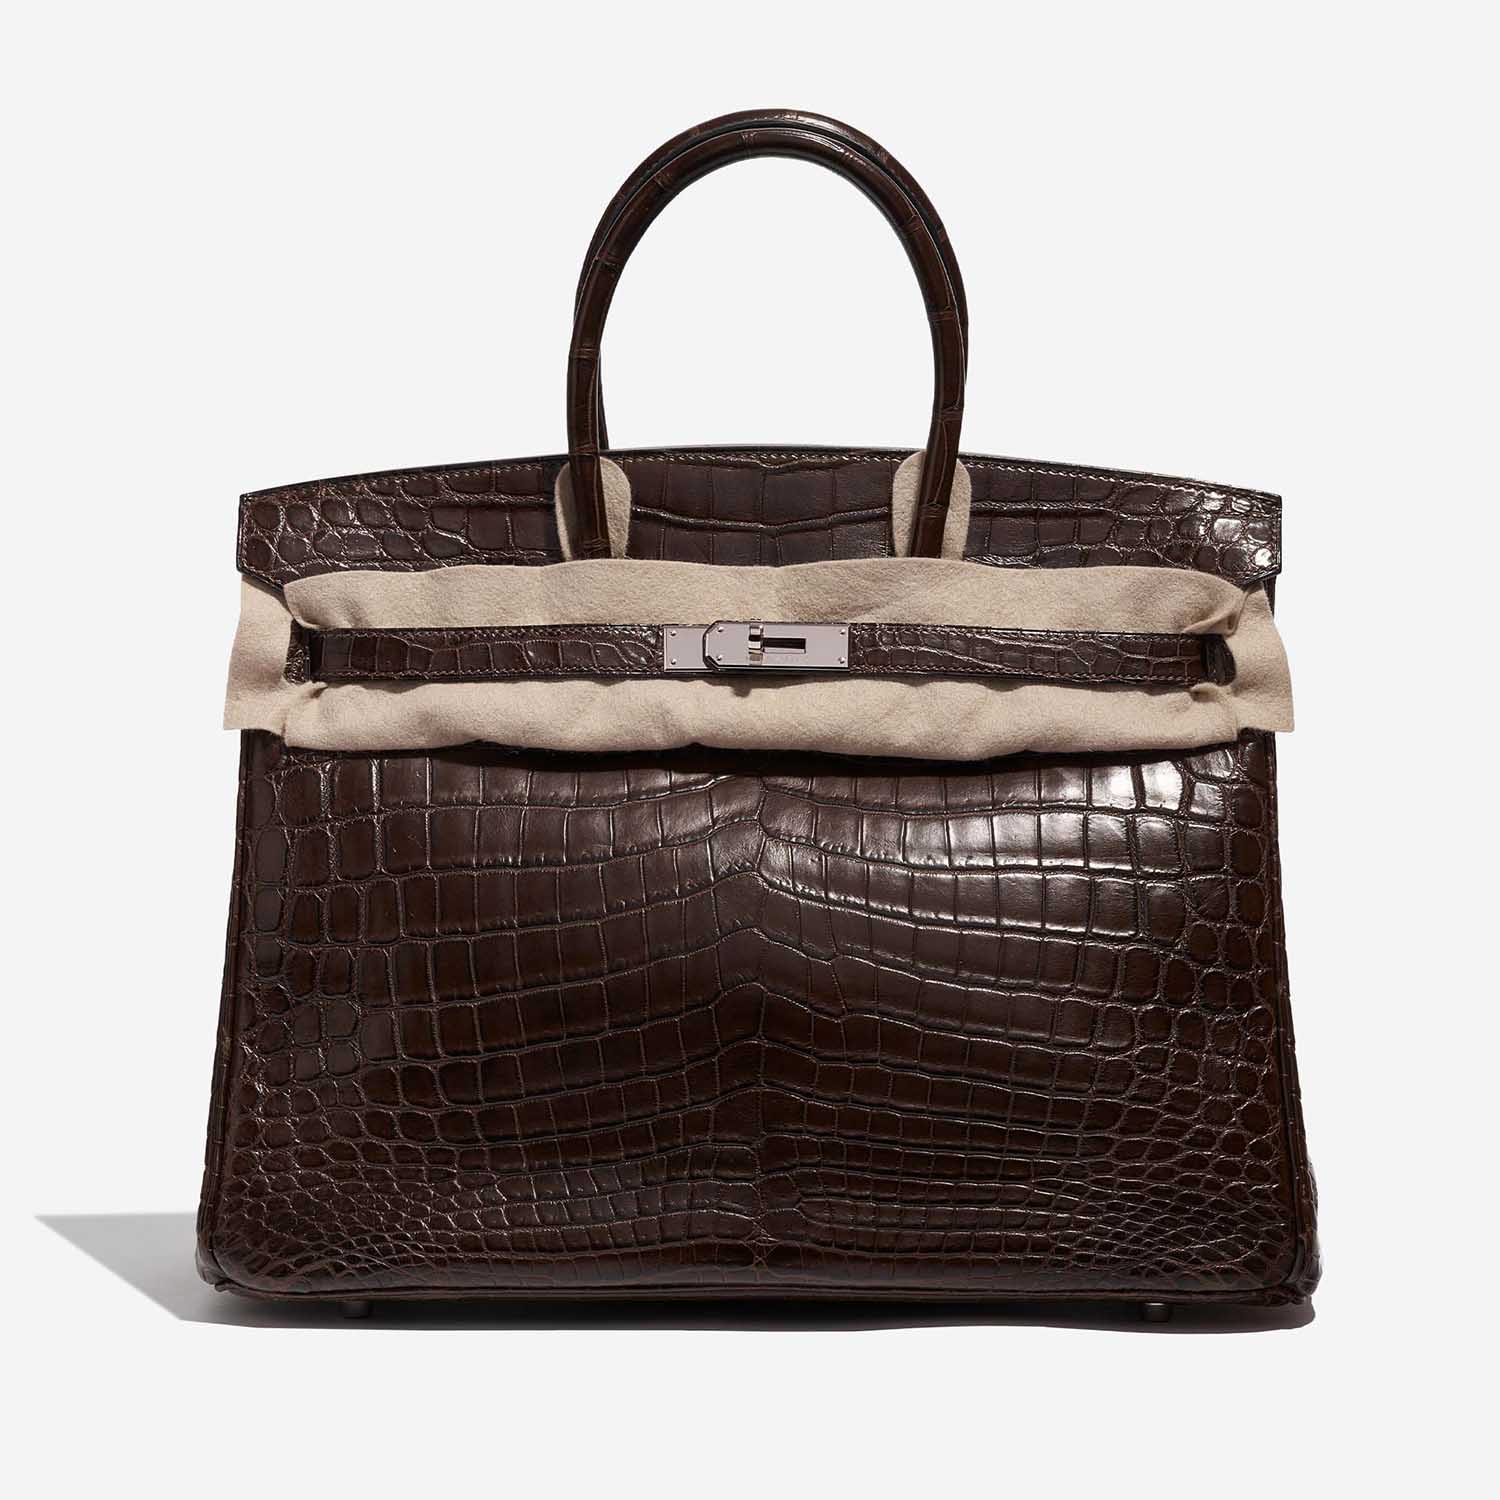 Pre-owned Hermès Tasche Birkin 35 Krokodil Niloticus Marron Braun Front Velt | Verkaufen Sie Ihre Designer-Tasche auf Saclab.com